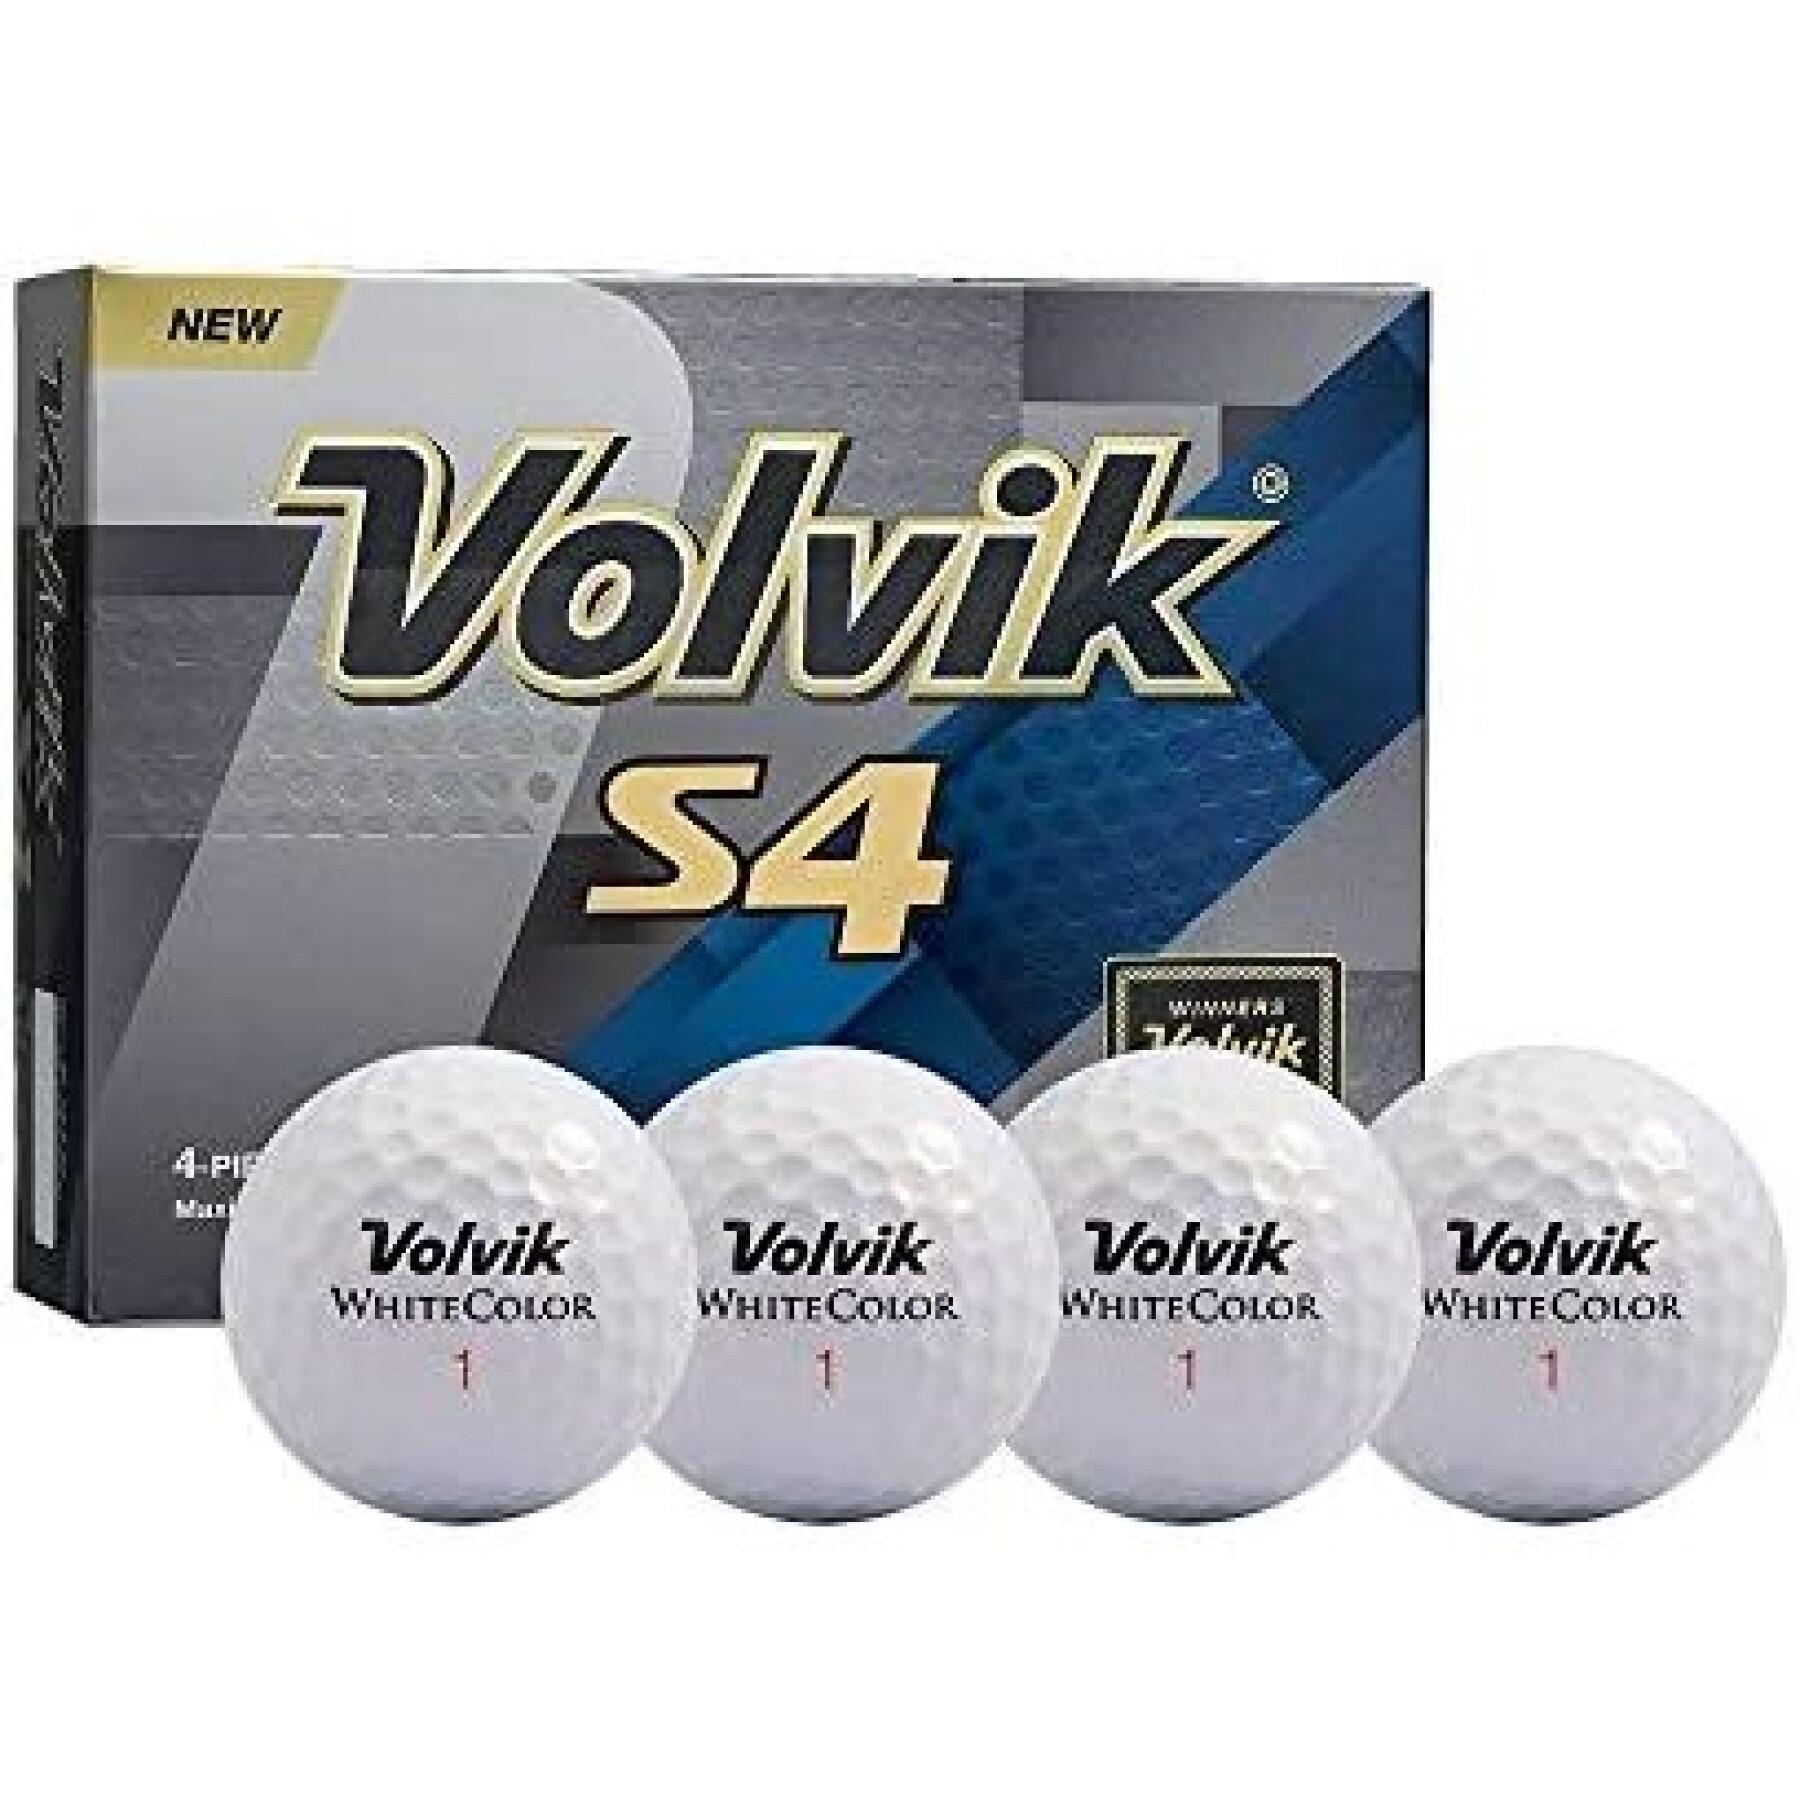 Paquete de 12 pelotas de golf Volvik DZ S4